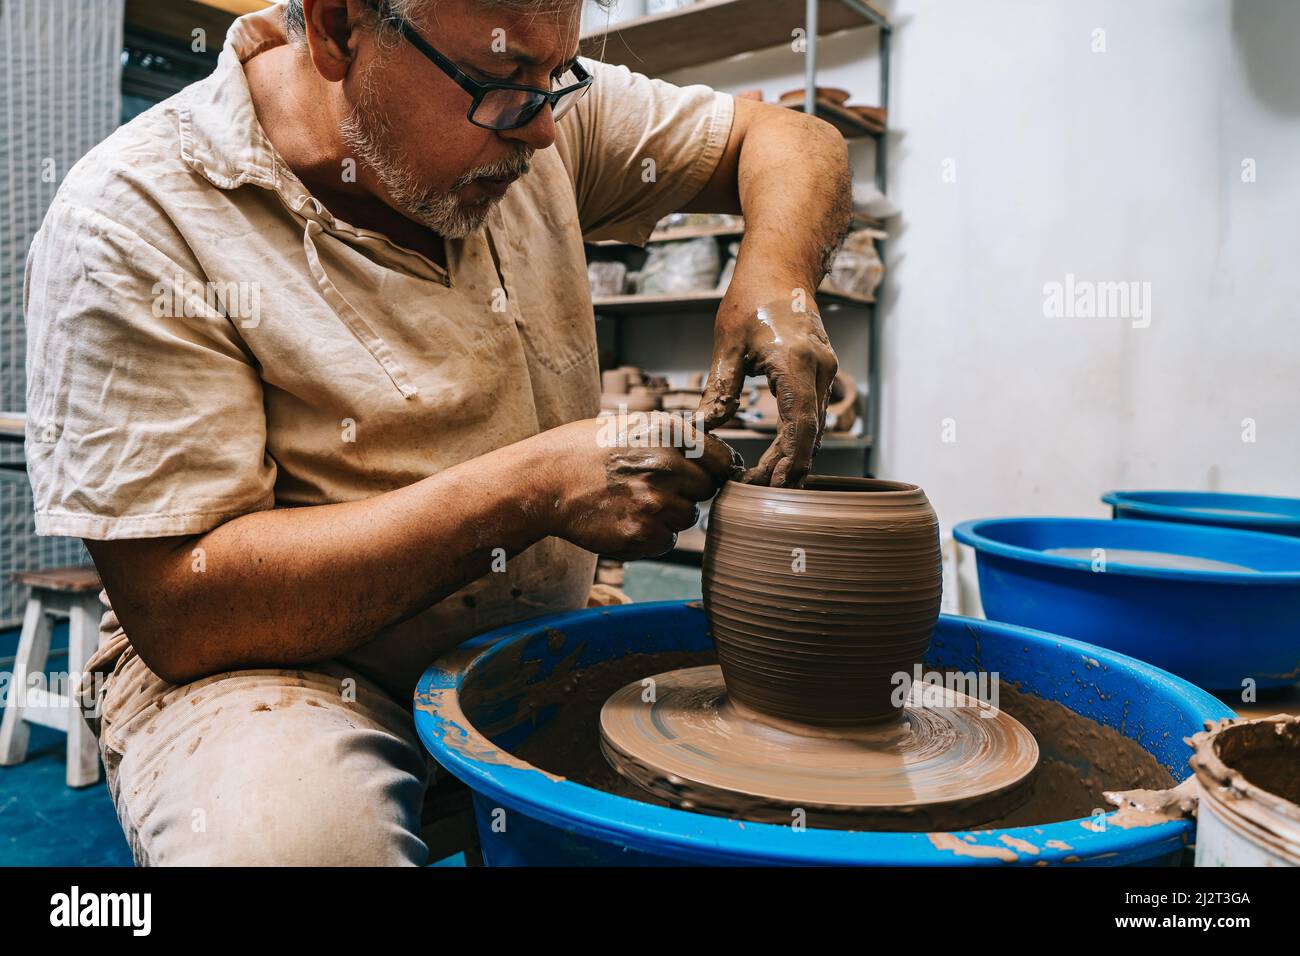 Un potier qualifié travaillant l'argile avec ses mains sur une roue de potier, la façonnant comme il tourne. Concept de fabrication artisanale. Banque D'Images